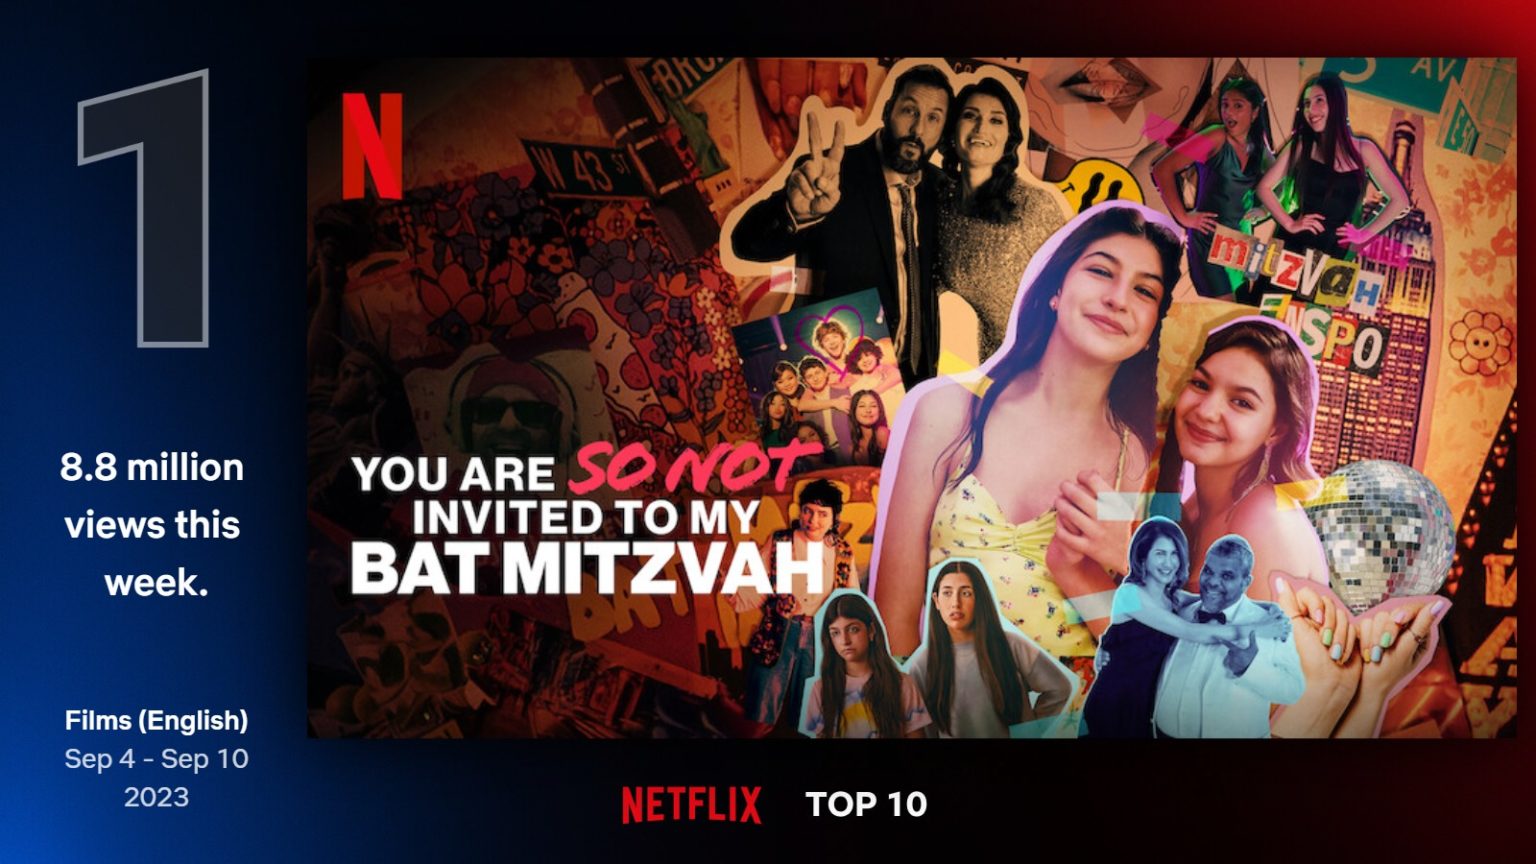 You Are So Not Invited to My Bat Mitzvah, Film ini menduduki peringkat teratas di Top 10 Film Netflix Global